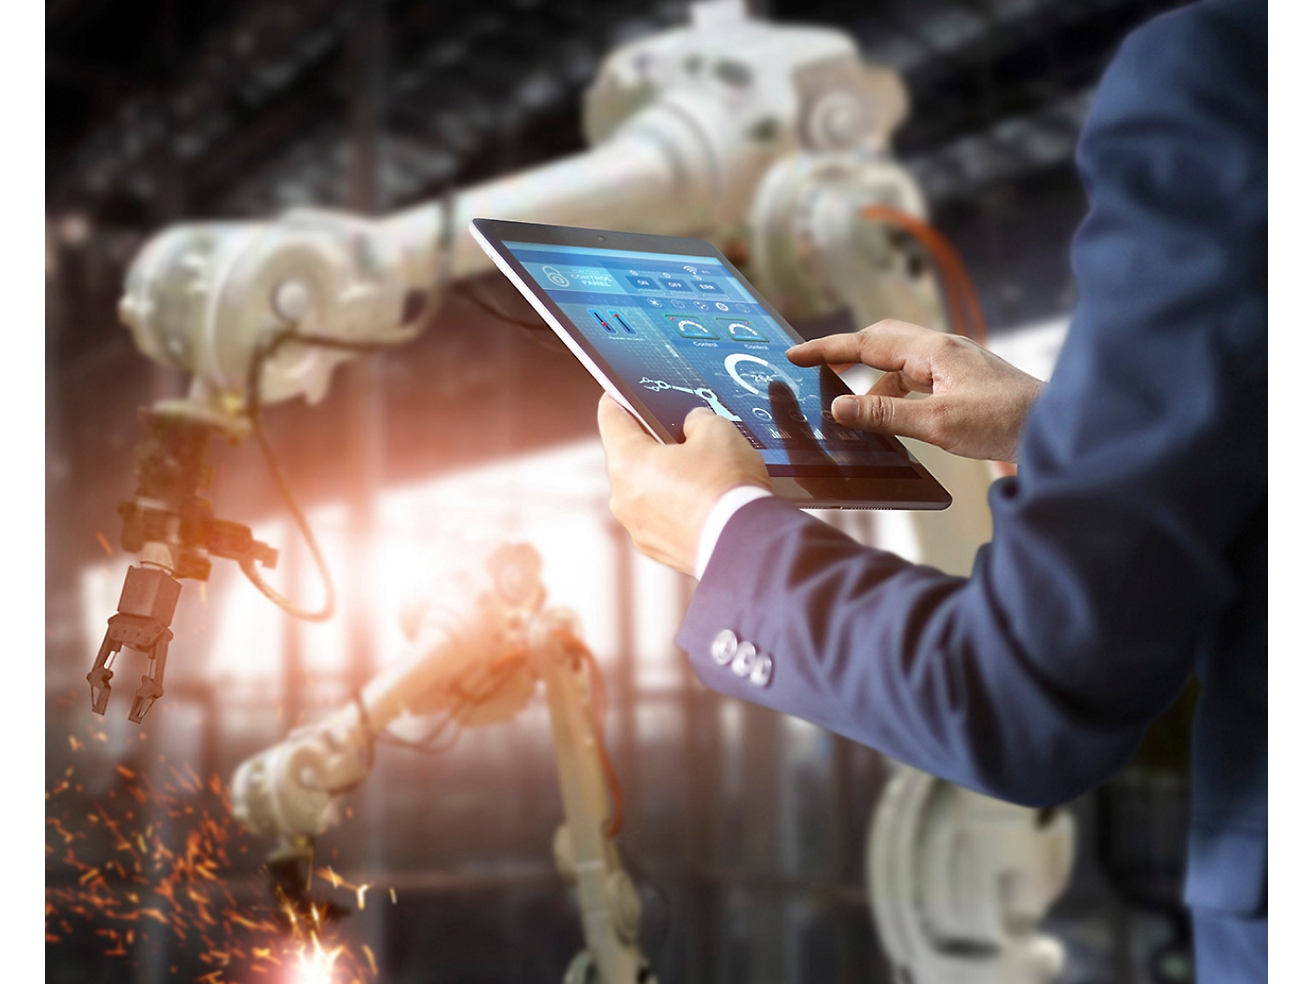 Una persona controla en una fábrica unos brazos robóticos mediante una tableta, lo que pone de relieve la avanzada tecnología de automatización.